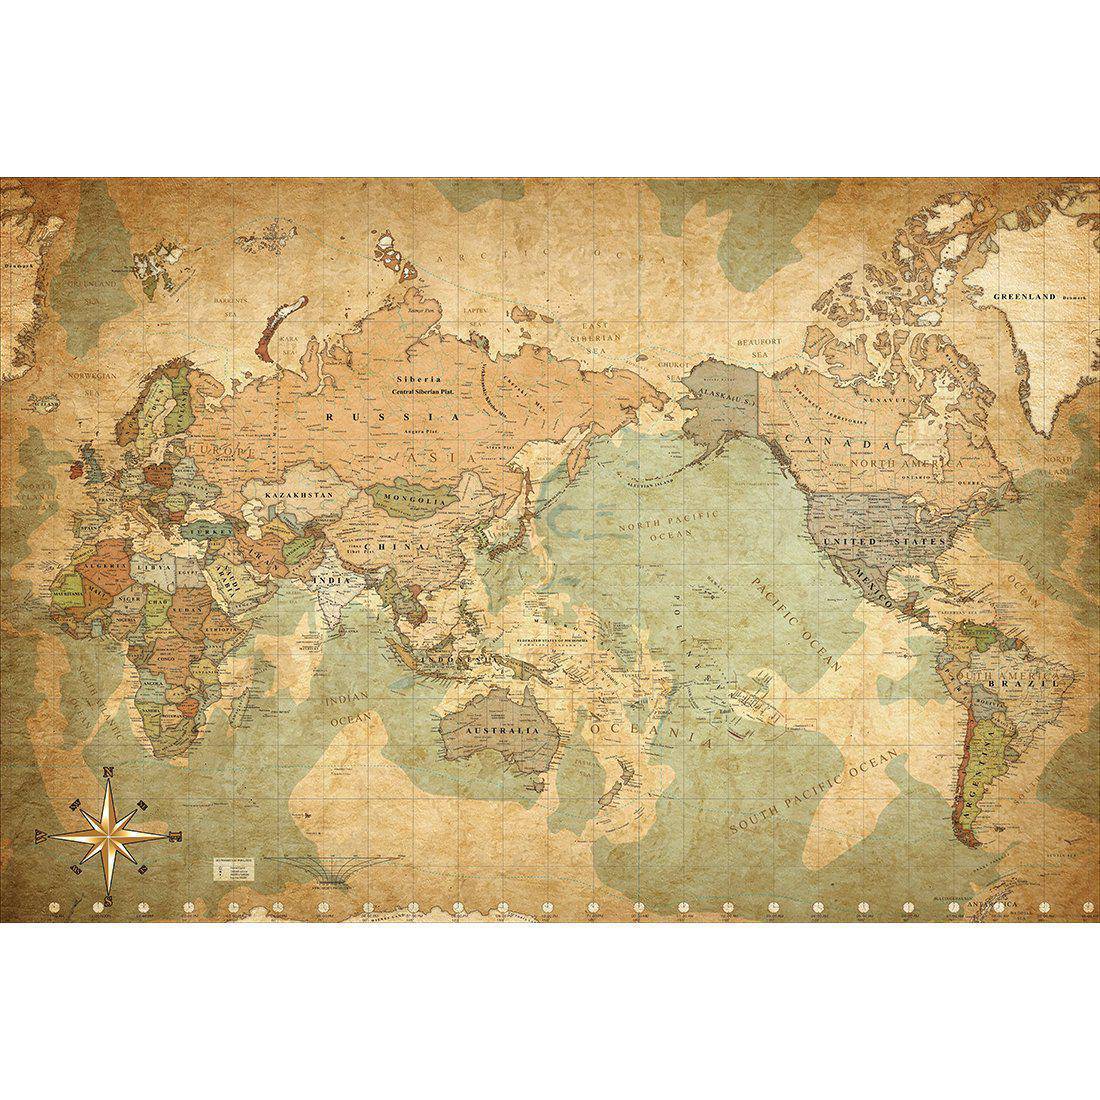 Antique World Map Canvas Art-Canvas-Wall Art Designs-45x30cm-Canvas - No Frame-Wall Art Designs